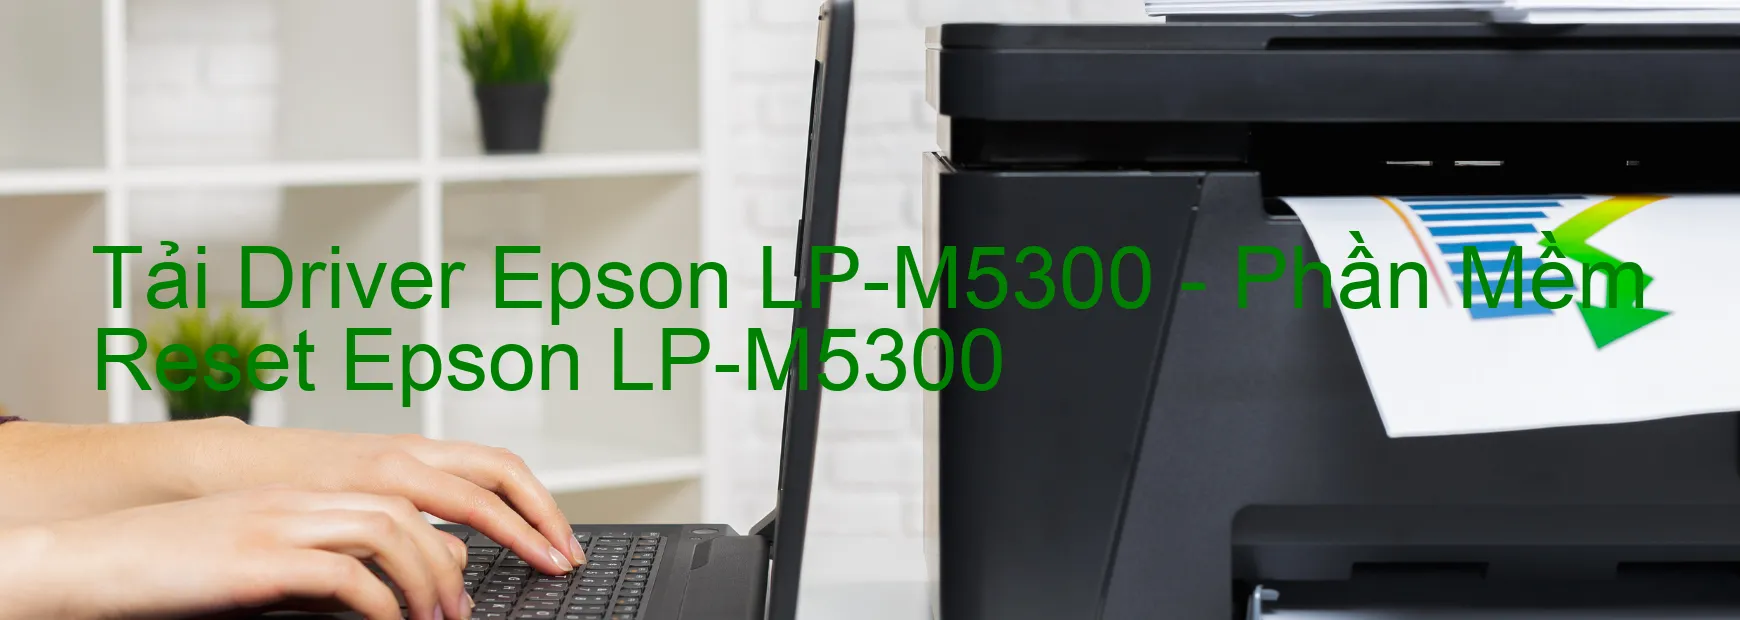 Driver Epson LP-M5300, Phần Mềm Reset Epson LP-M5300